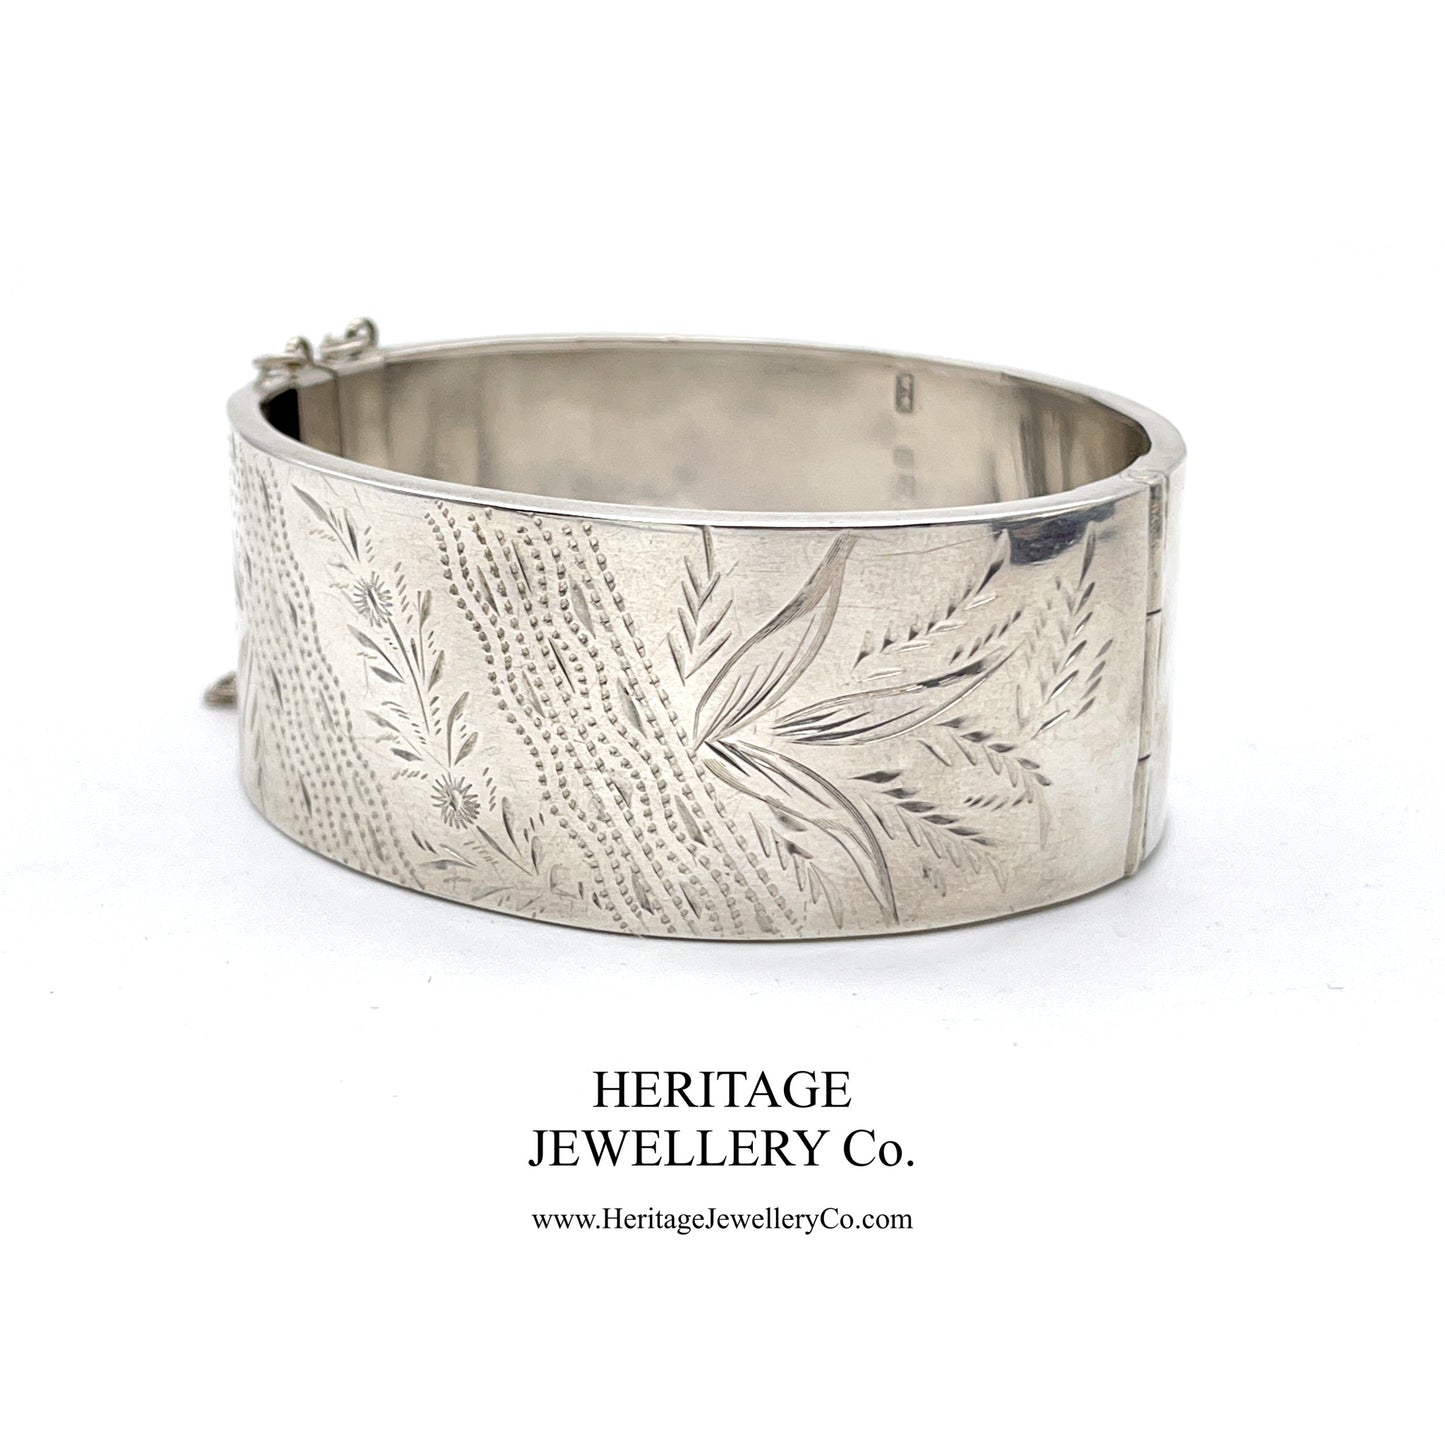 Antique Victorian Silver Bangle Bracelet (c. 1884)